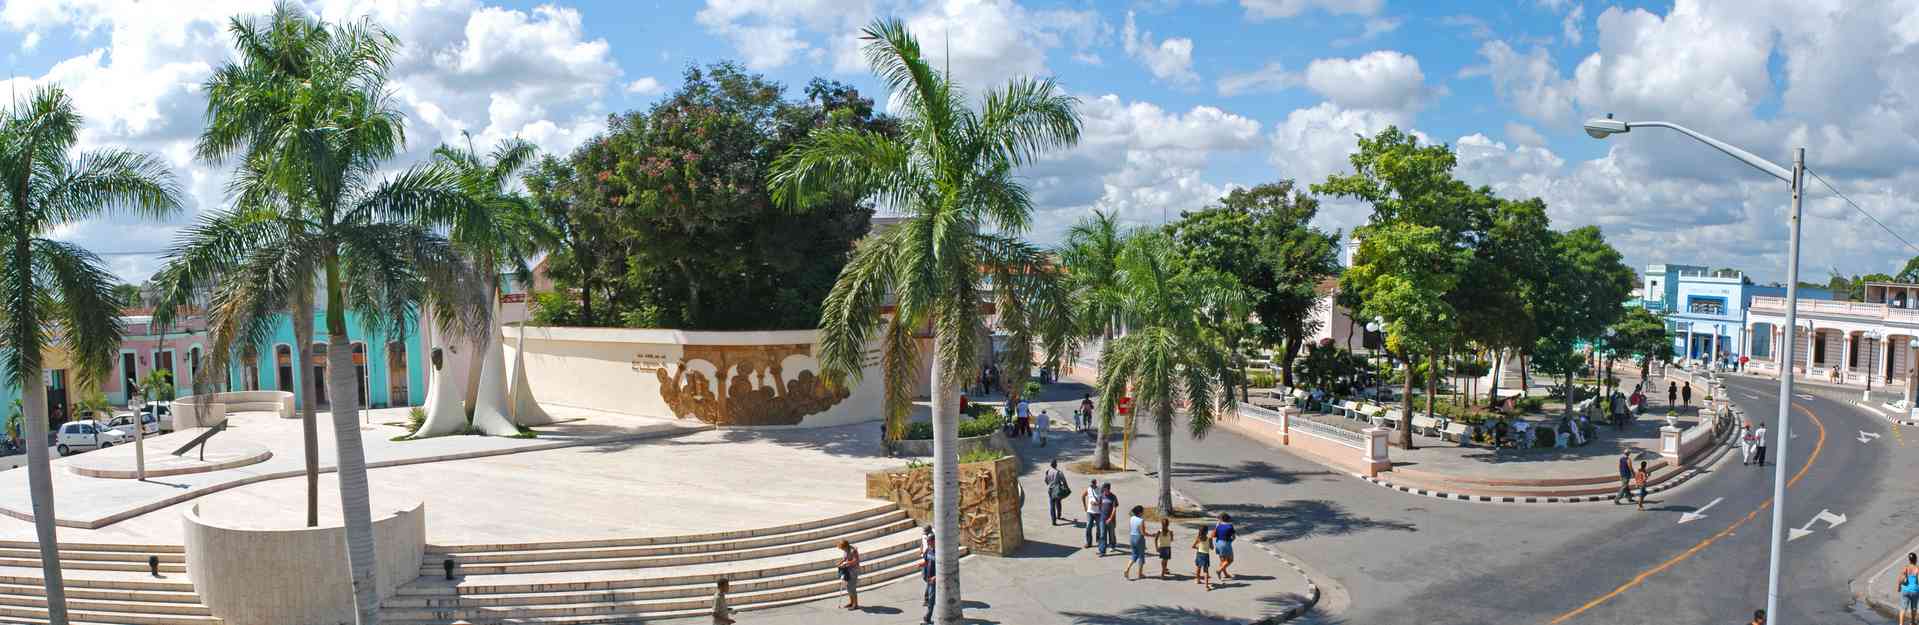 José Martí plaza martiana las tunas